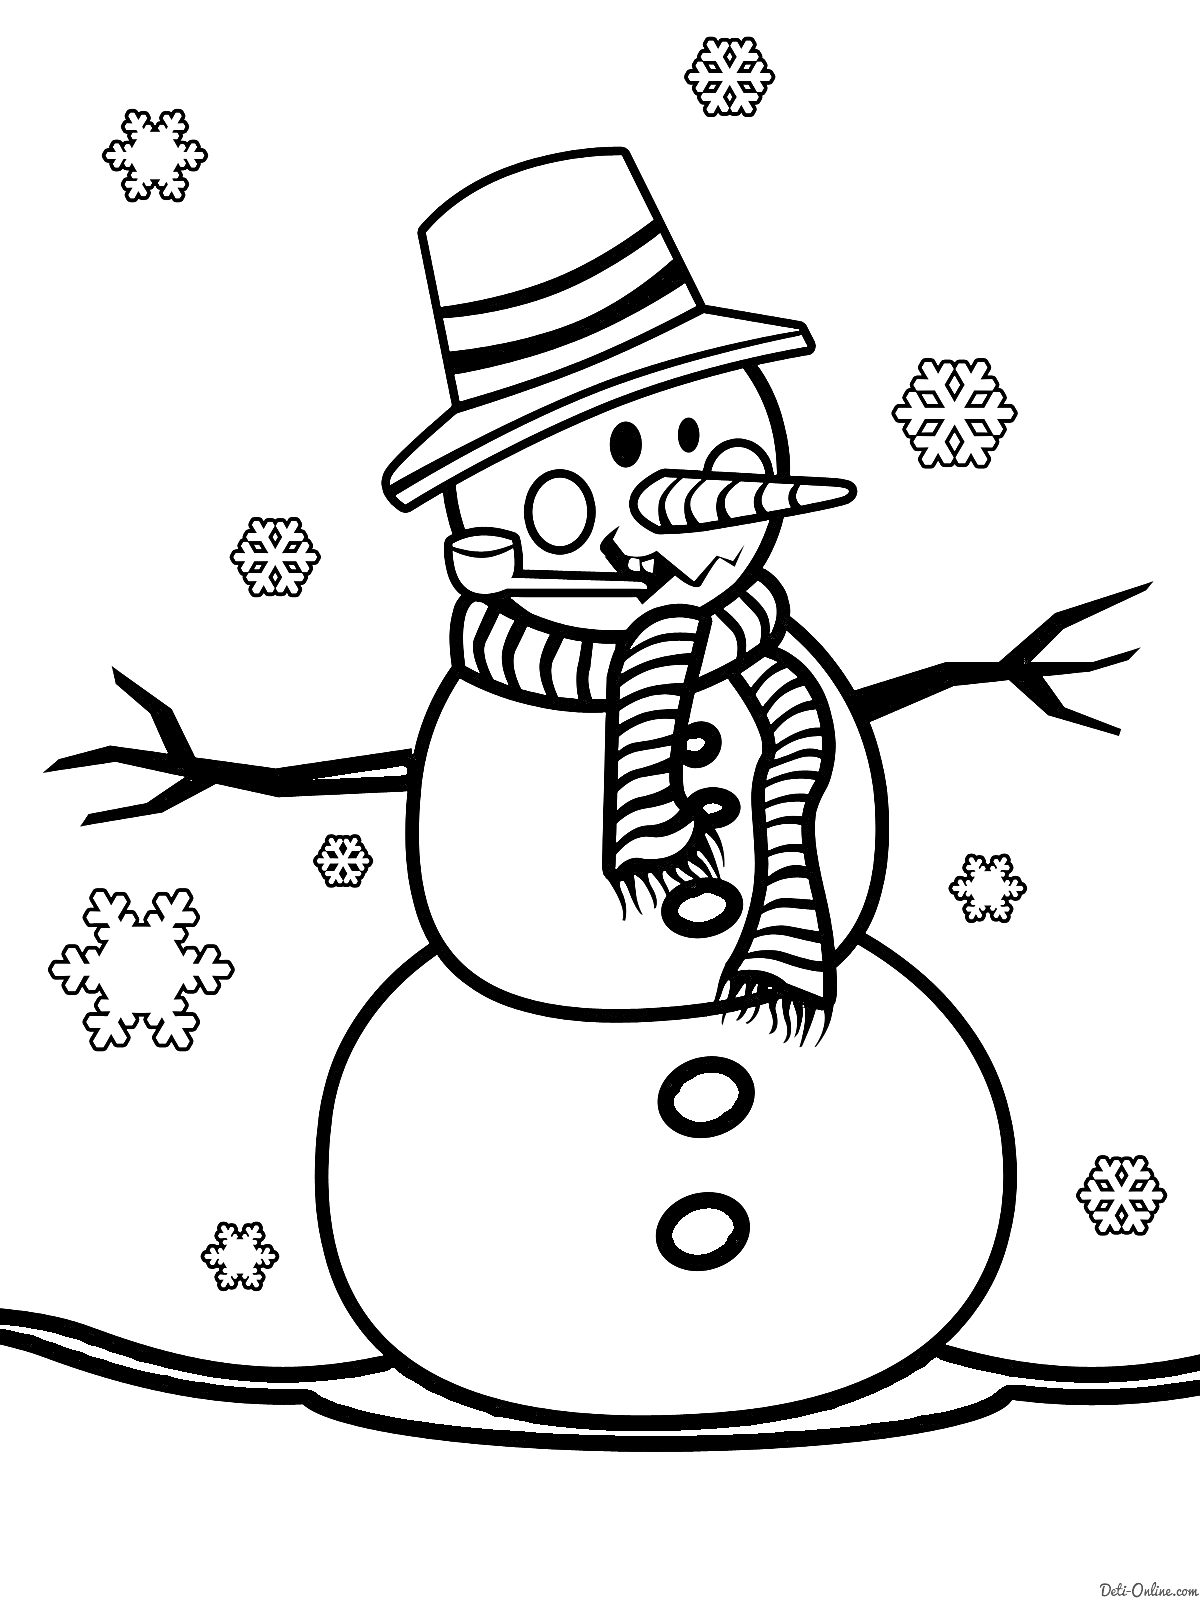 Раскраска Снеговик с полосатым шарфом и шляпой, окружённый снежинками